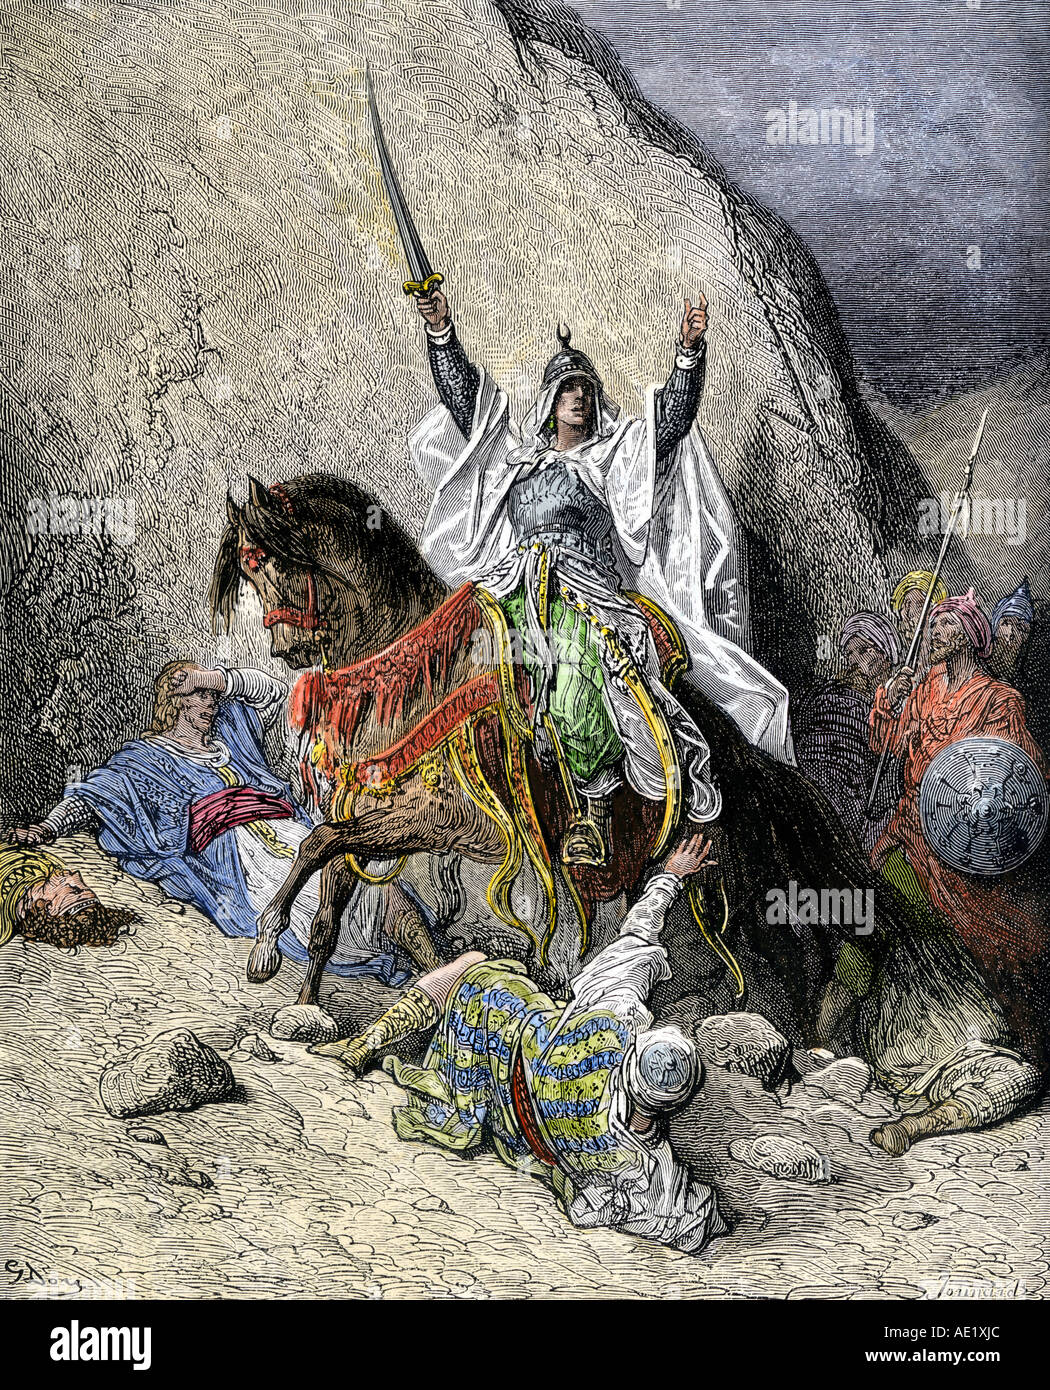 Saladino comandante delle forze musulmane contro i cristiani nella terza crociata 1100s. Colorate a mano la xilografia di Gustave Dore illustrazione Foto Stock